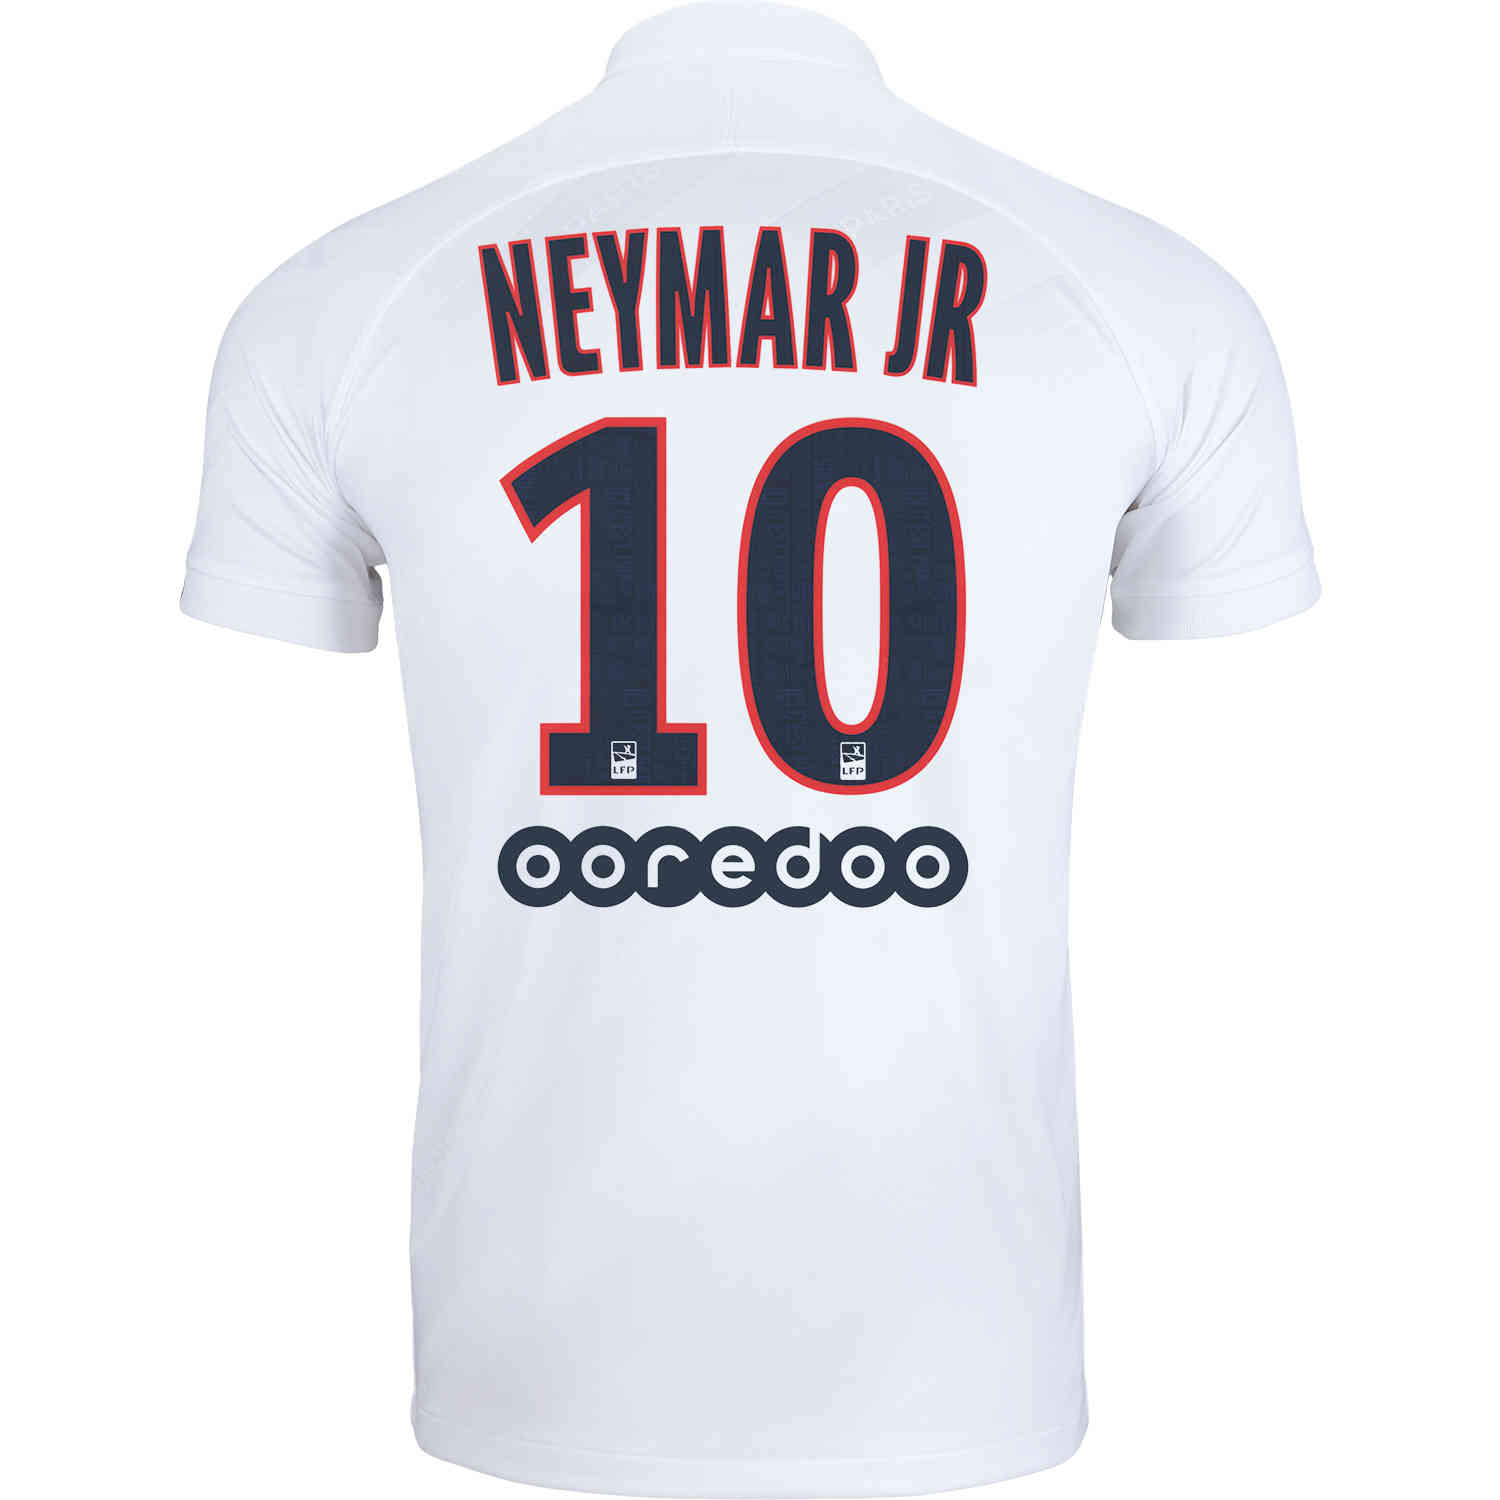 neymar jr jersey 2019